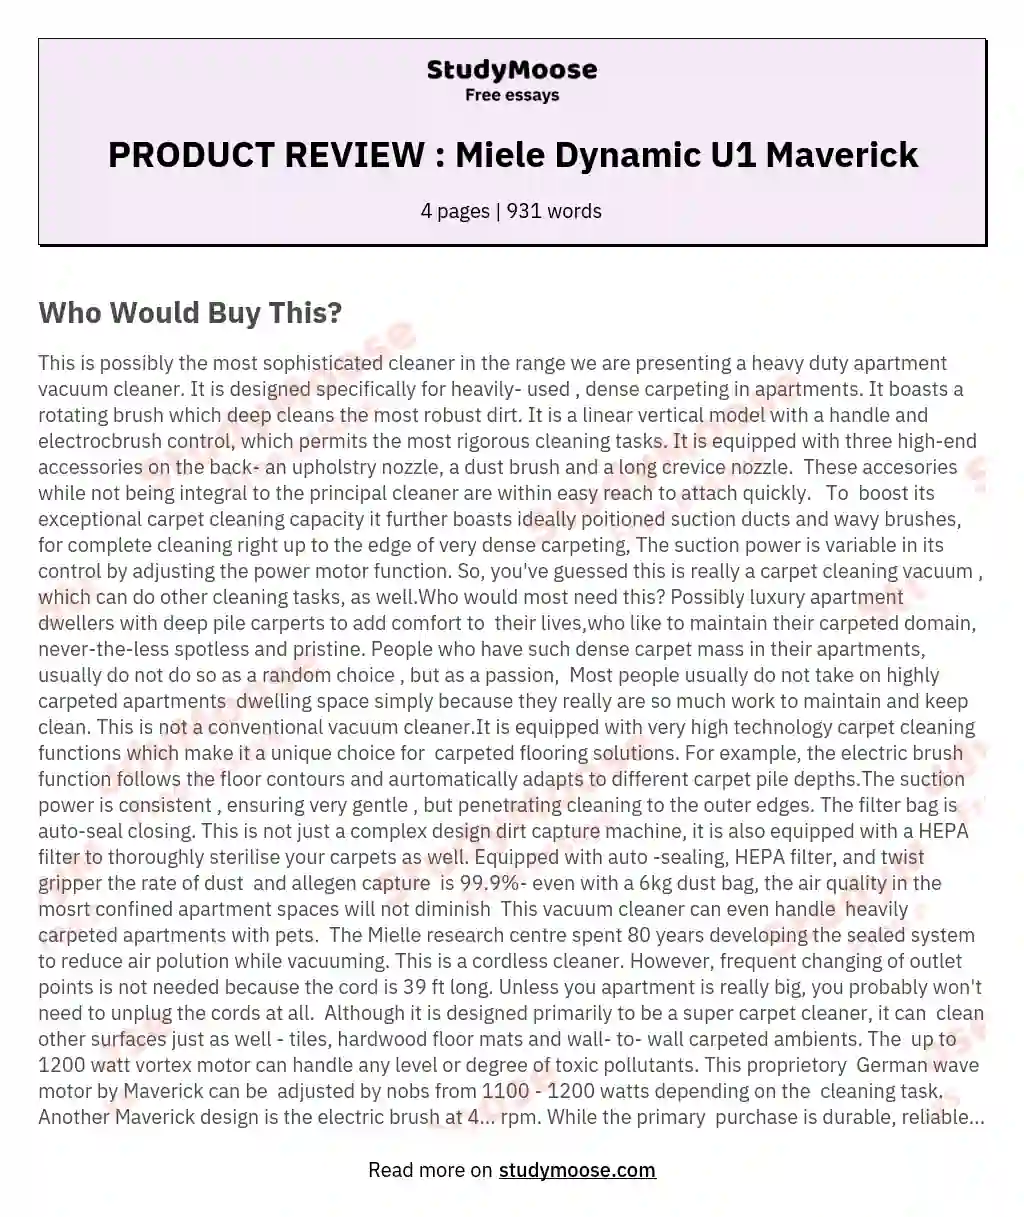 PRODUCT REVIEW : Miele Dynamic U1 Maverick essay